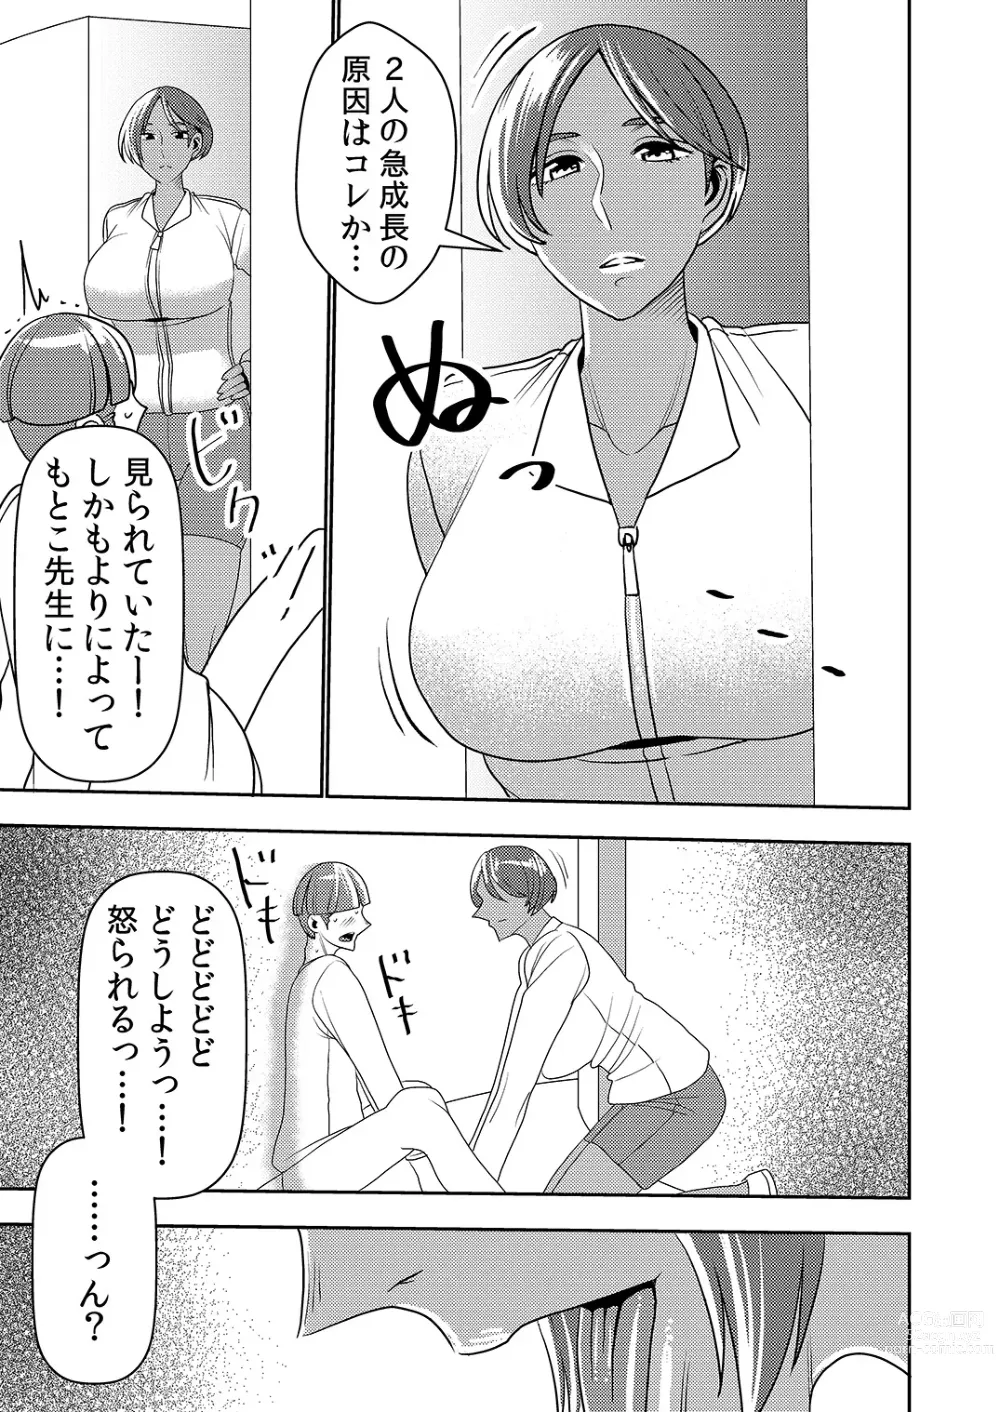 Page 14 of doujinshi Dekakute Eroi Boku no Imouto 5